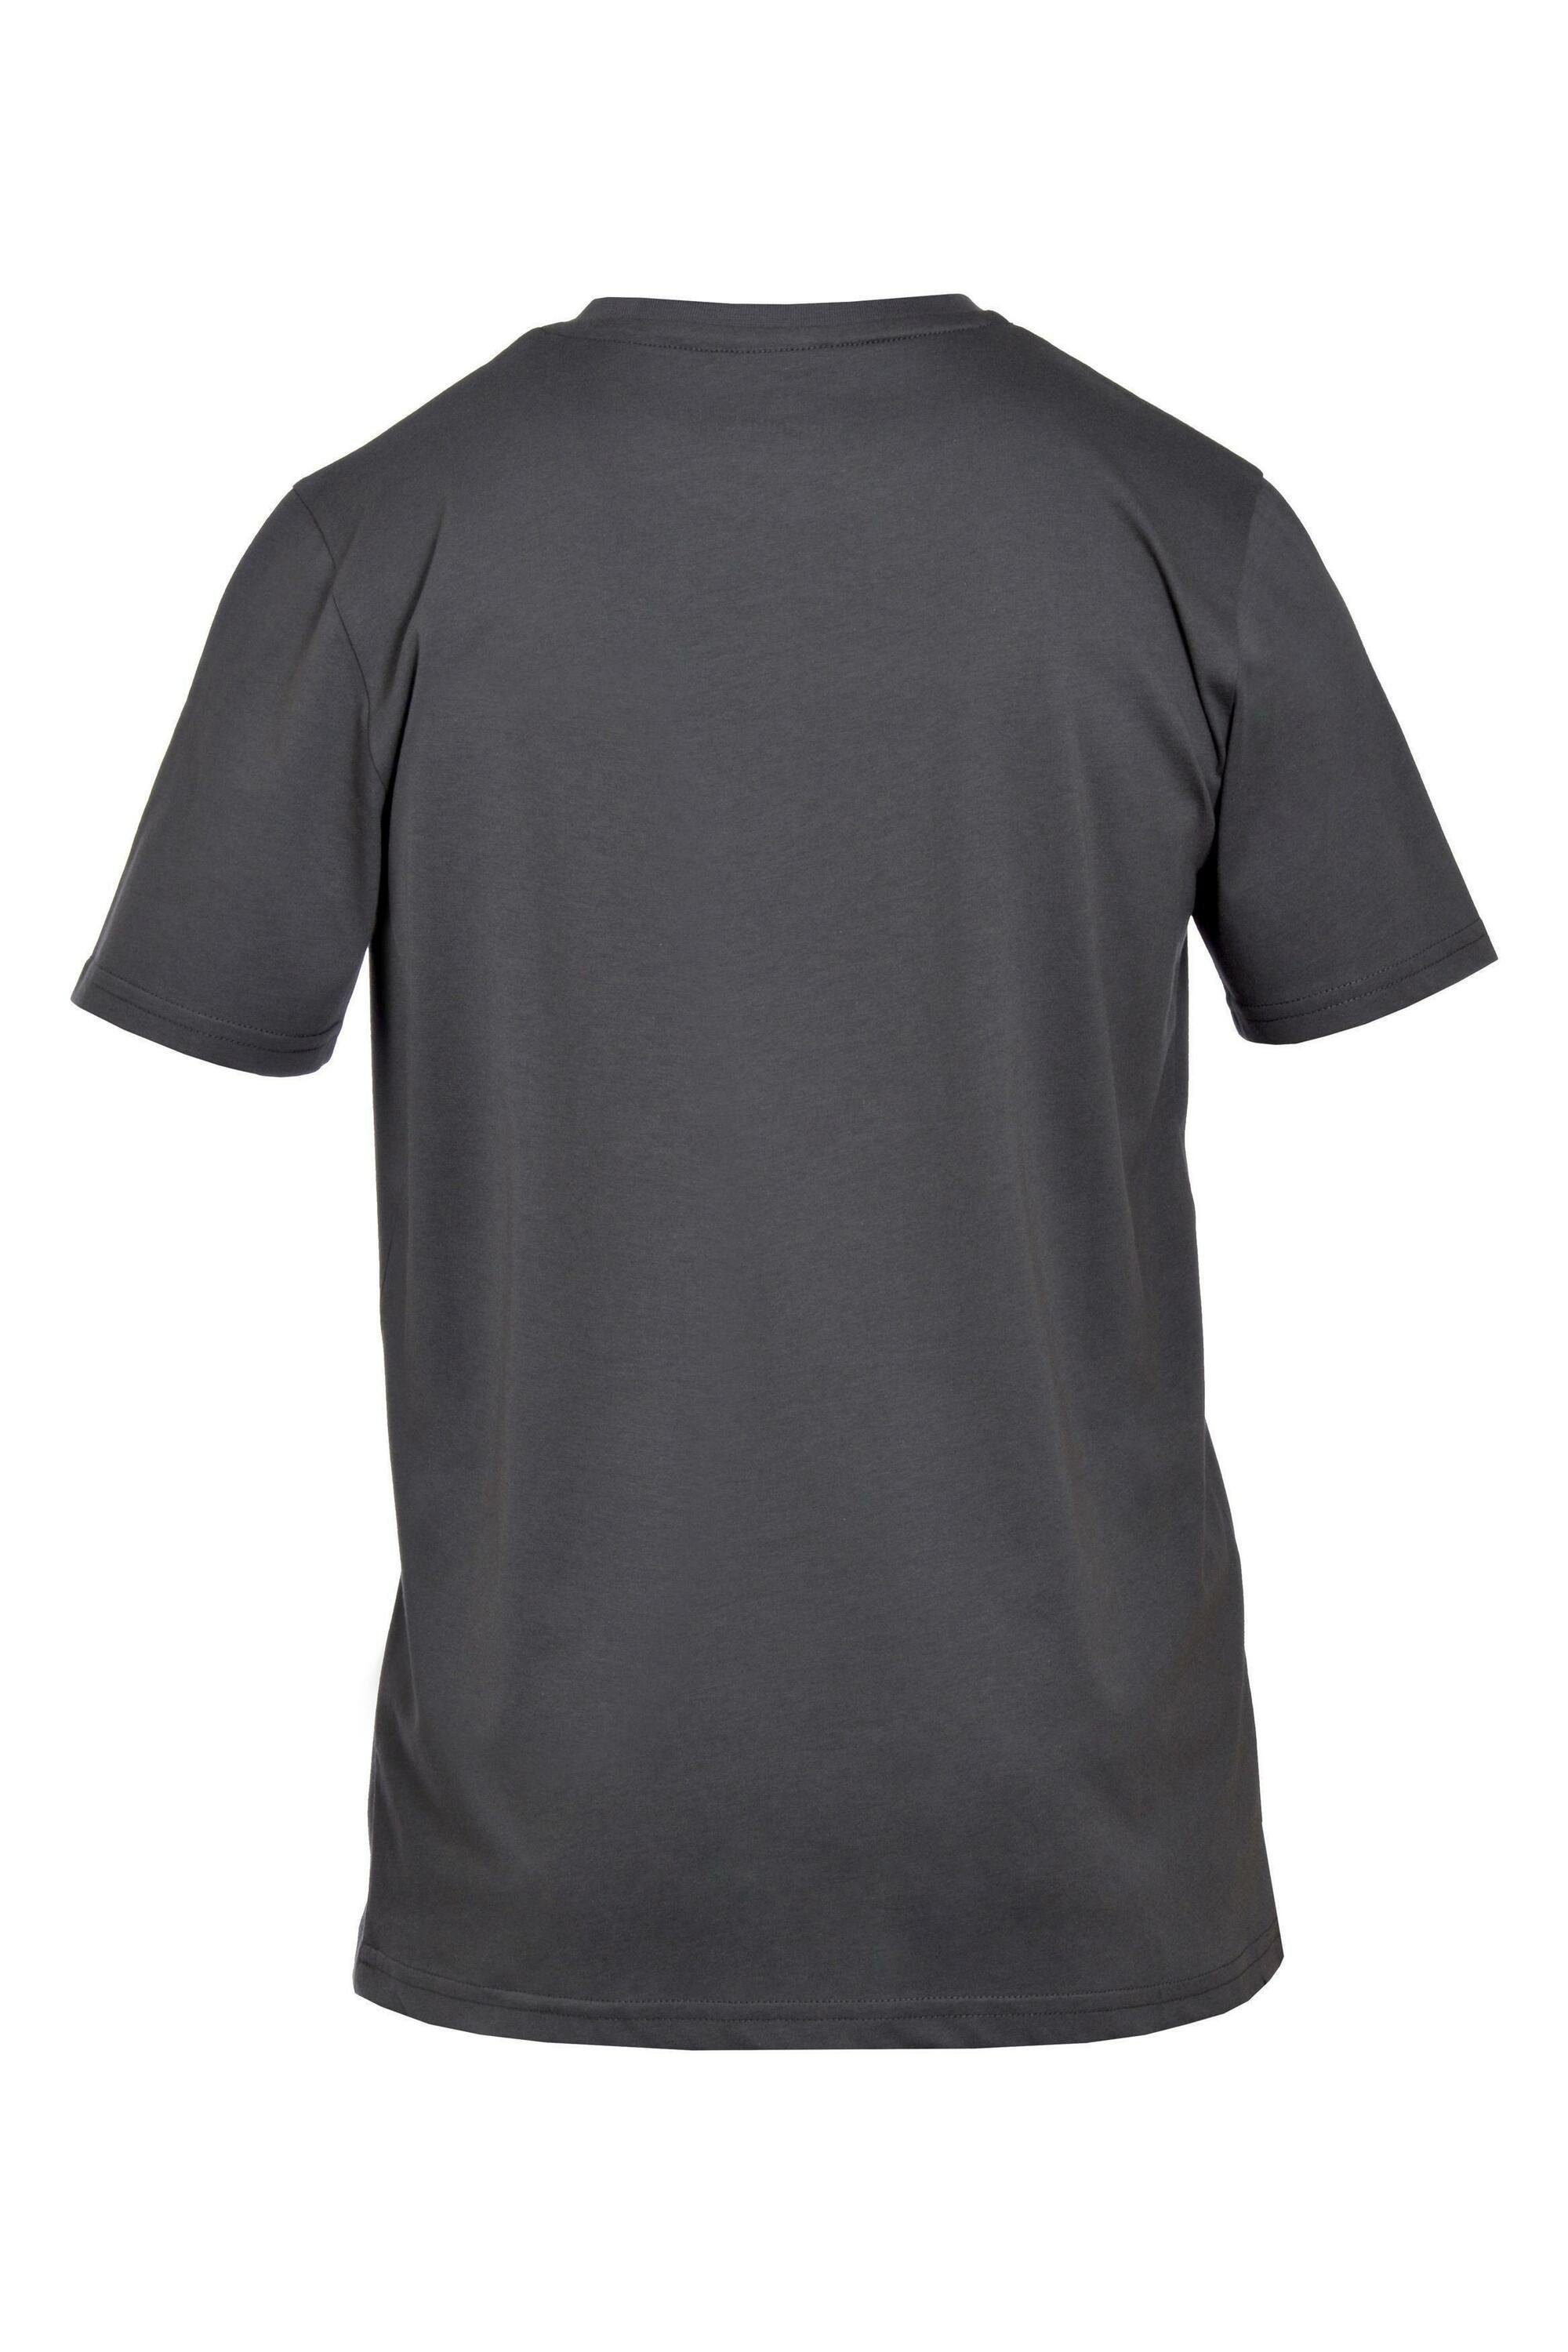 Gipfelglück T-Shirt George für Herren, Anthracite aus Bio-Baumwolle